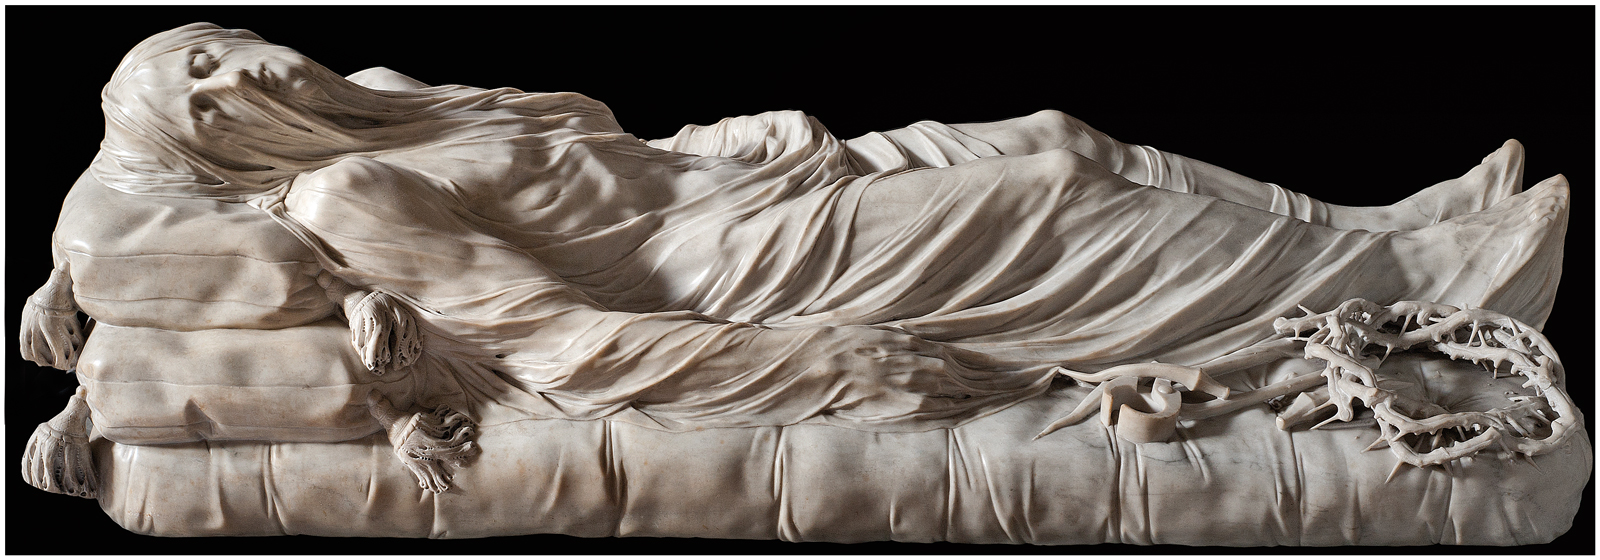 Giuseppe Sanmartino | The Veiled Christ, 1753 | Tutt'Art@ | Pittura ...